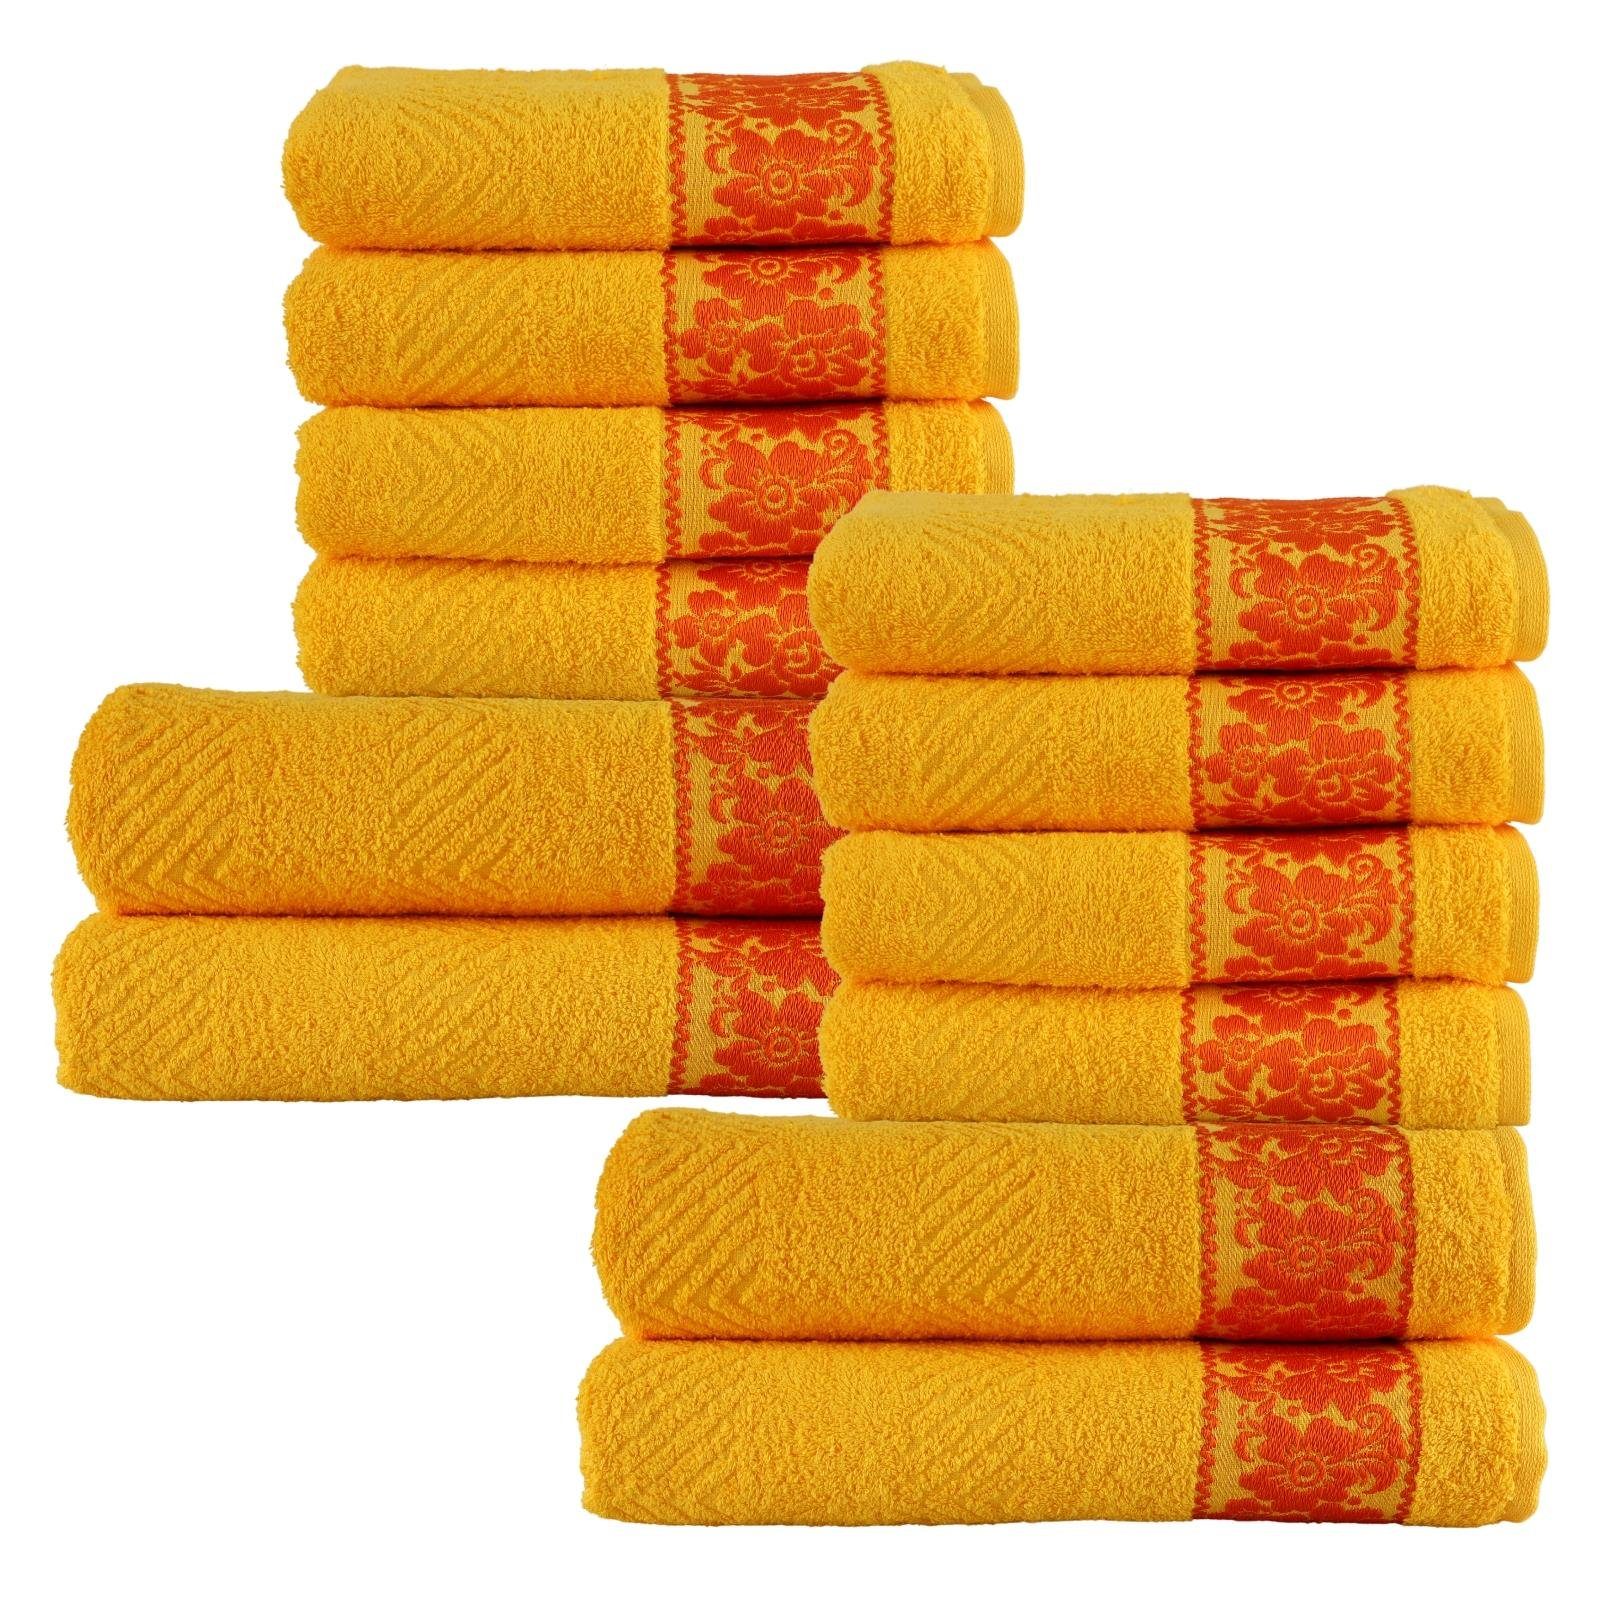 Plentyfy Duschtücher Hand- &Duschtuch Set 12tlg aus 100% Baumwolle, 100% Baumwolle (12-St), Duschhandtuch - Frottee Handtuch Set - Badetuch | Badetücher